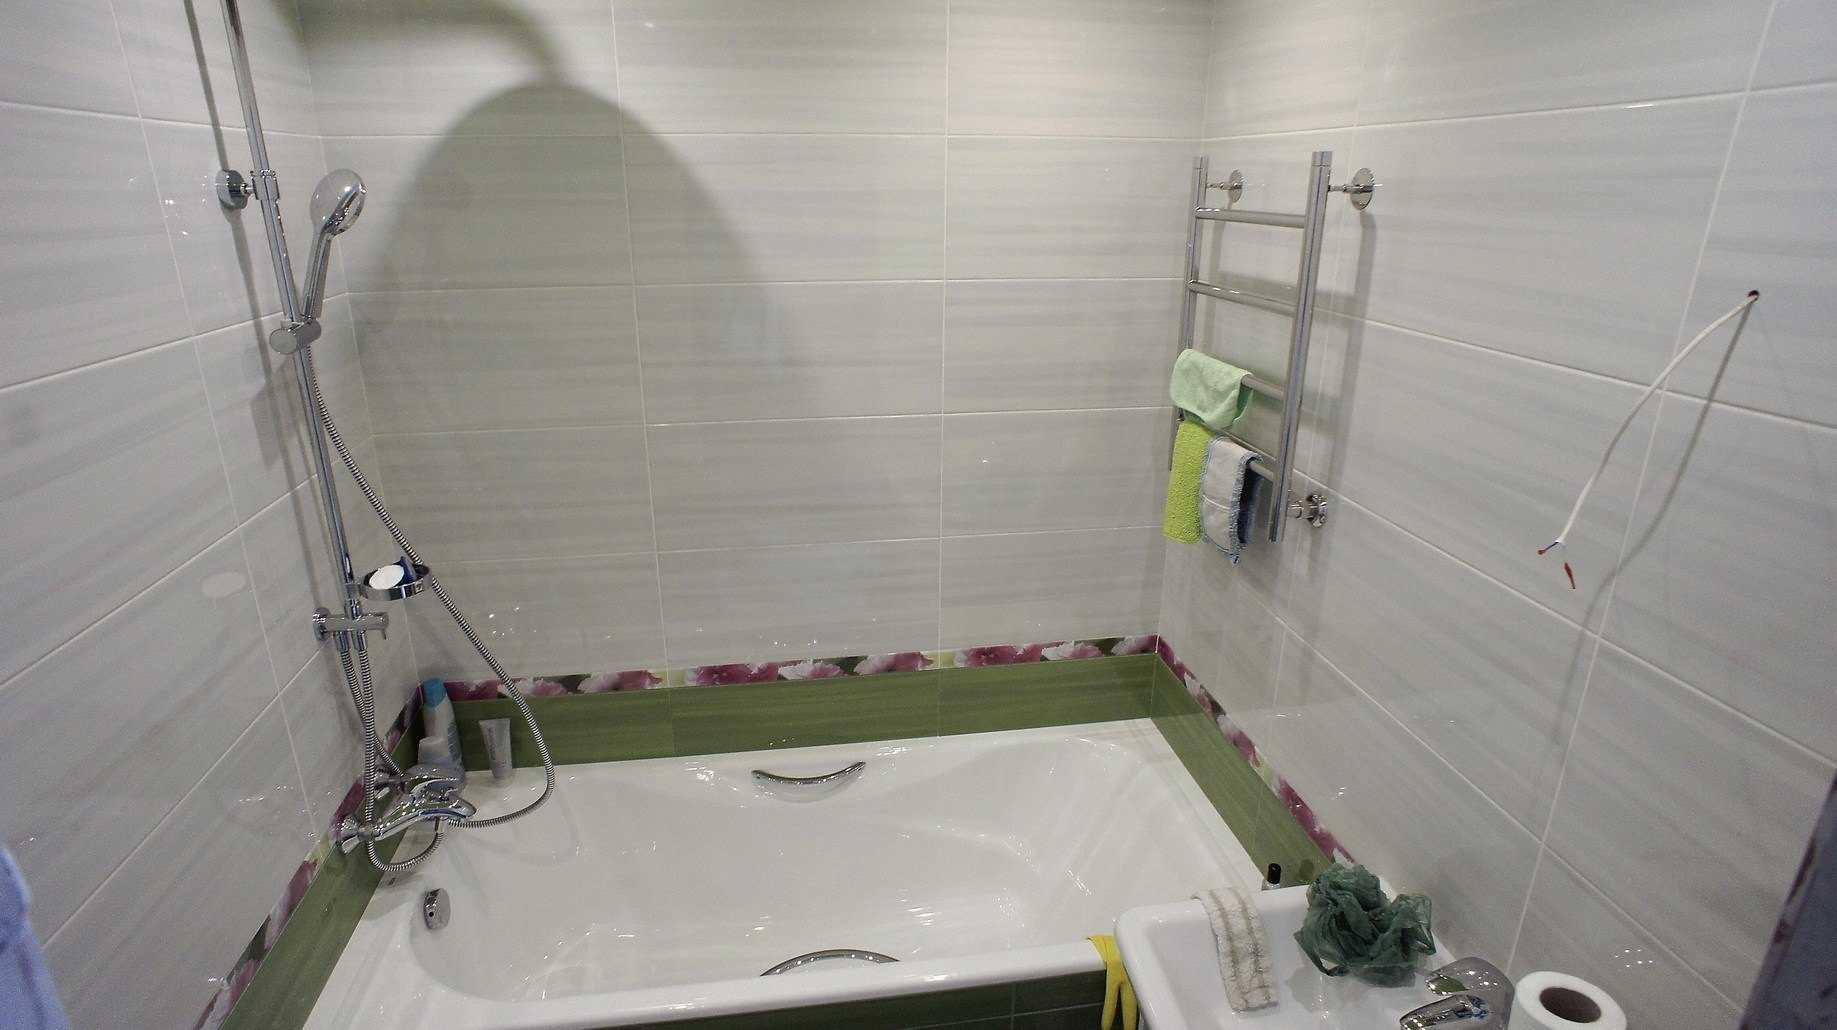 Ремонт в ванной комнате своими руками - видео, фото - vannayasvoimirukami.ru